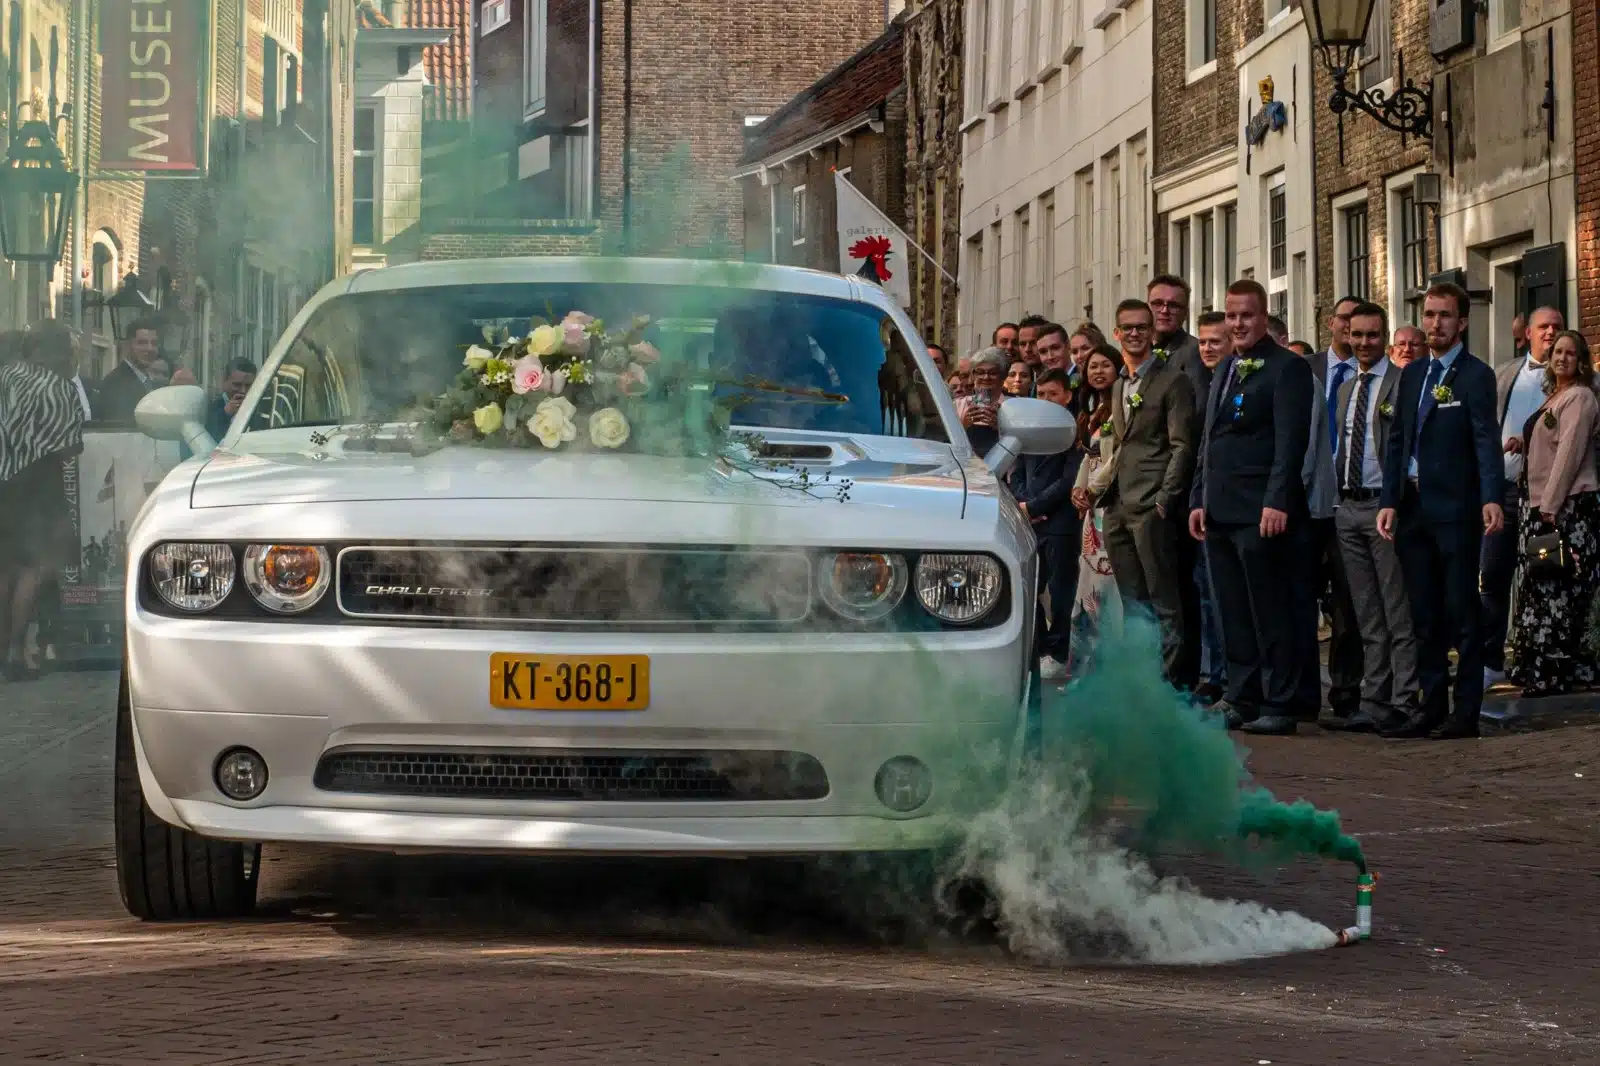 Witte trouwauto huren in Den Haag - Huwelijk in Den haag